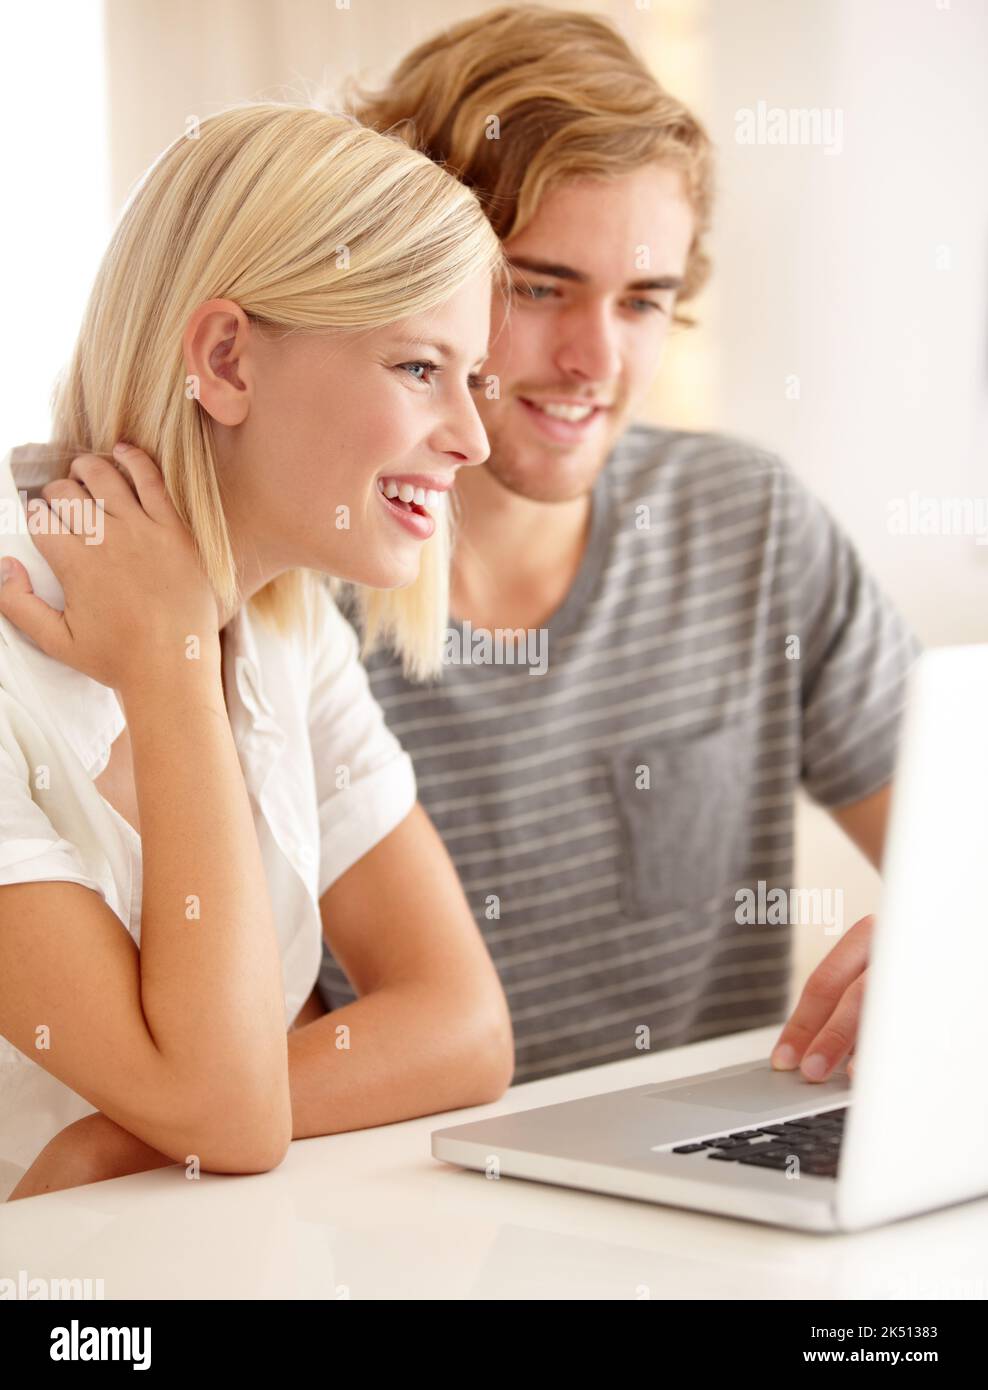 Reírse de un correo electrónico divertido Una pareja joven que usa un ordenador portátil para navegar por la web. Foto de stock